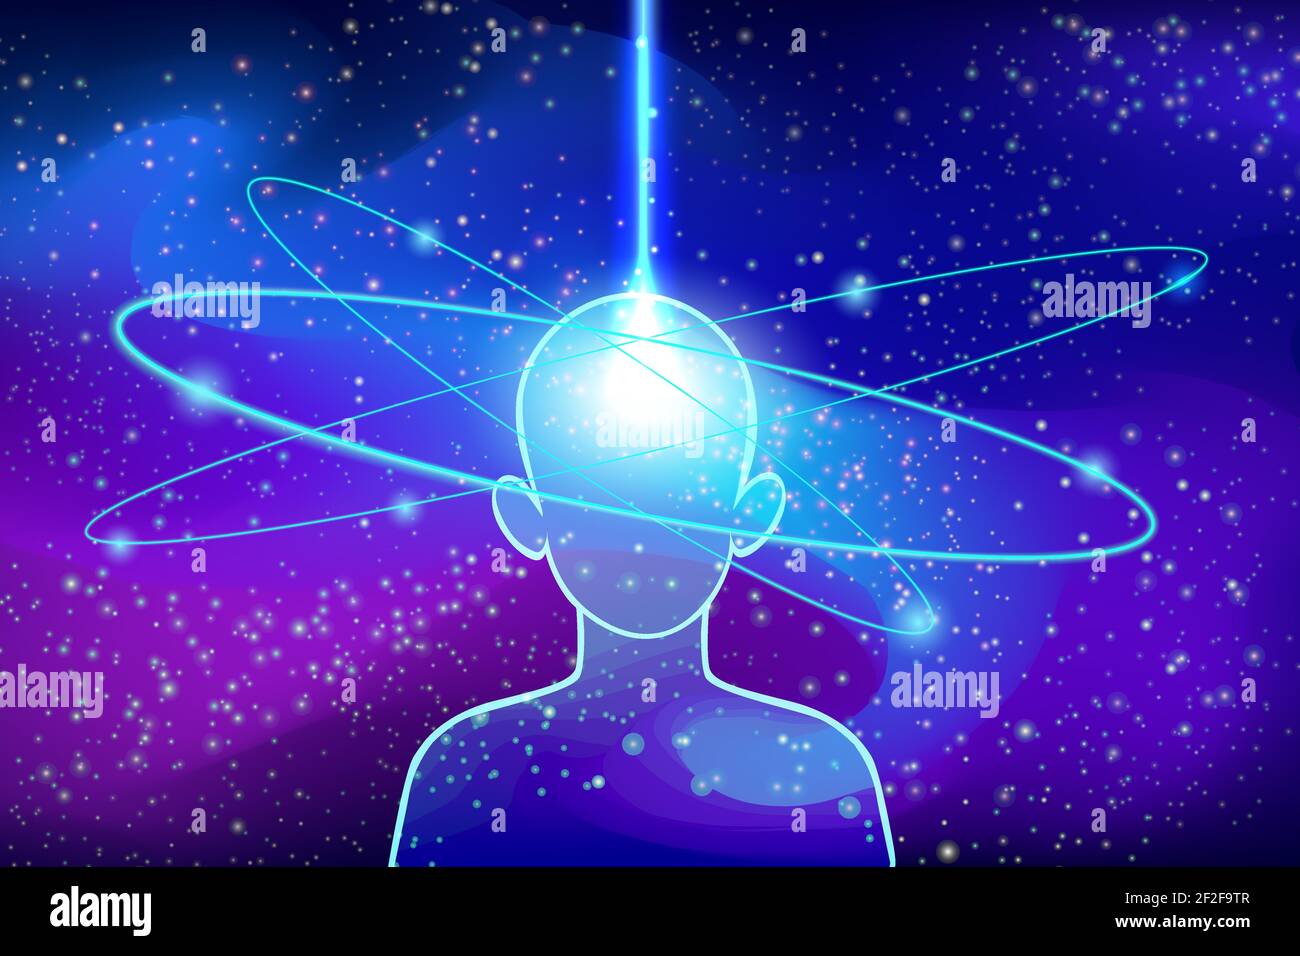 Astralfusion mit Universe Cliparts. Silhouette des Charakters, der kosmisches Bewusstsein mit blauen Sternbahnen erreicht hat. Stock Vektor